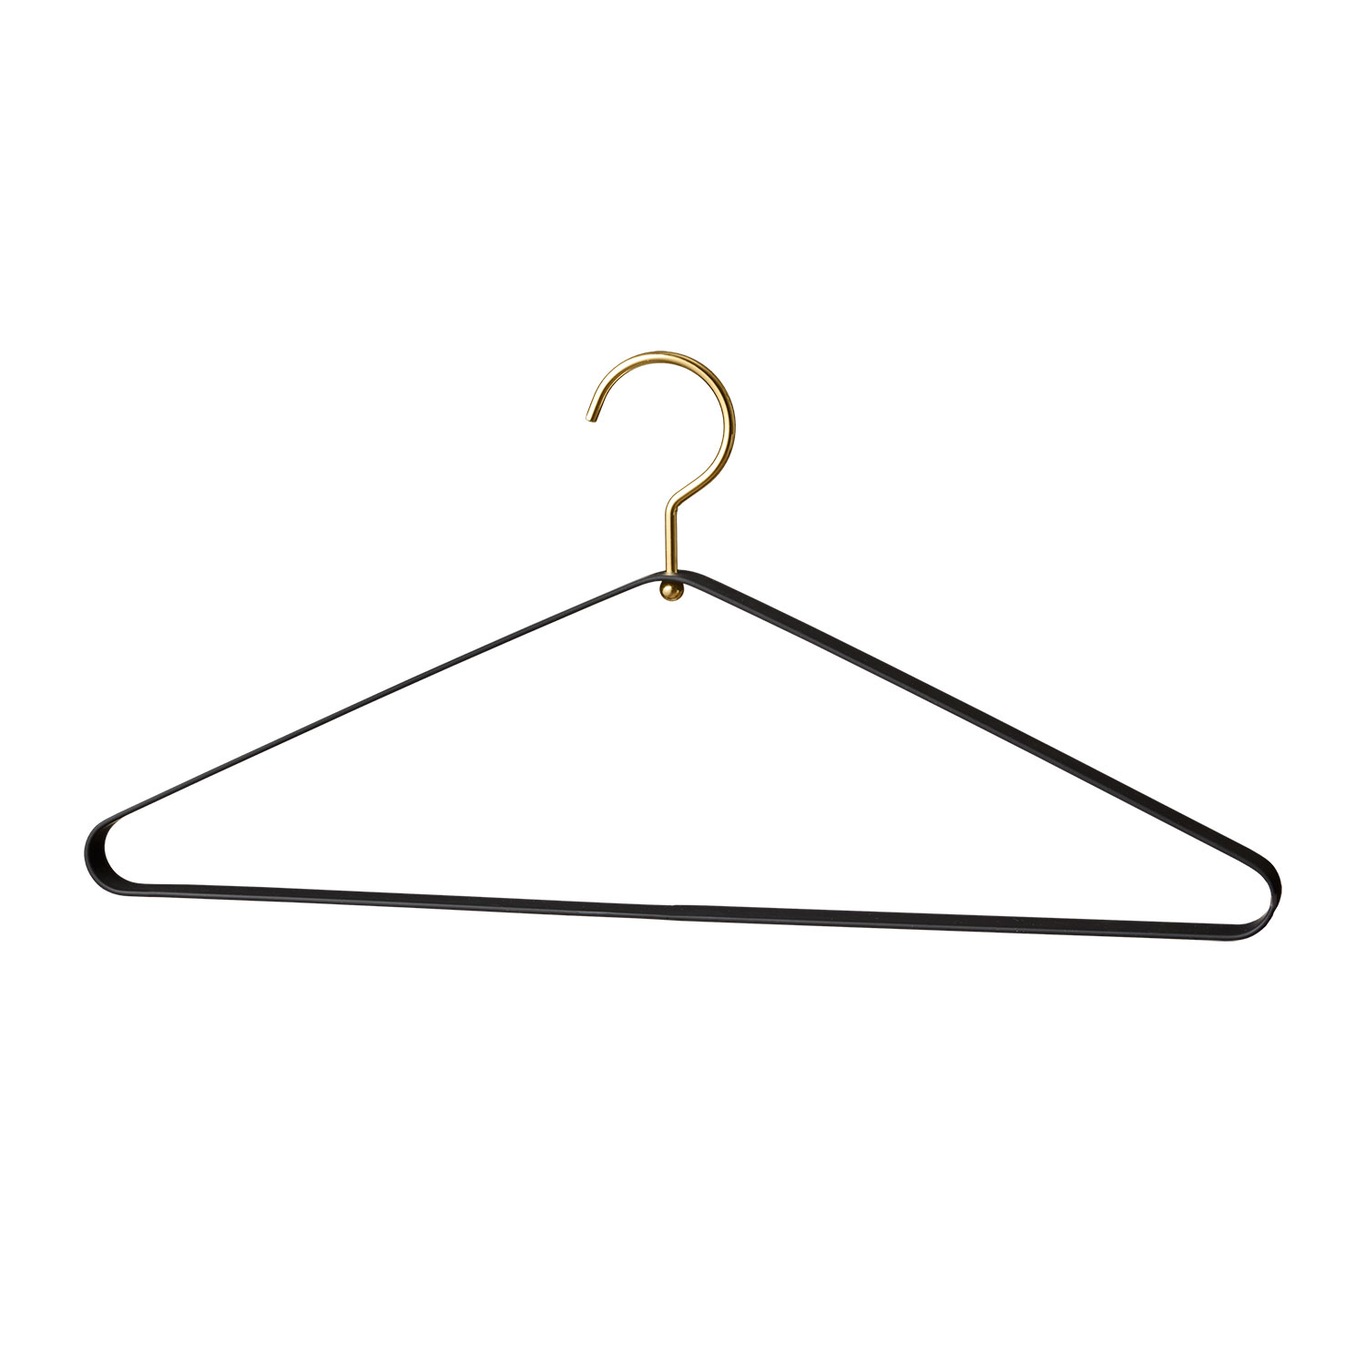 Vestis Clothes Hanger Set of 2, Black/Gold